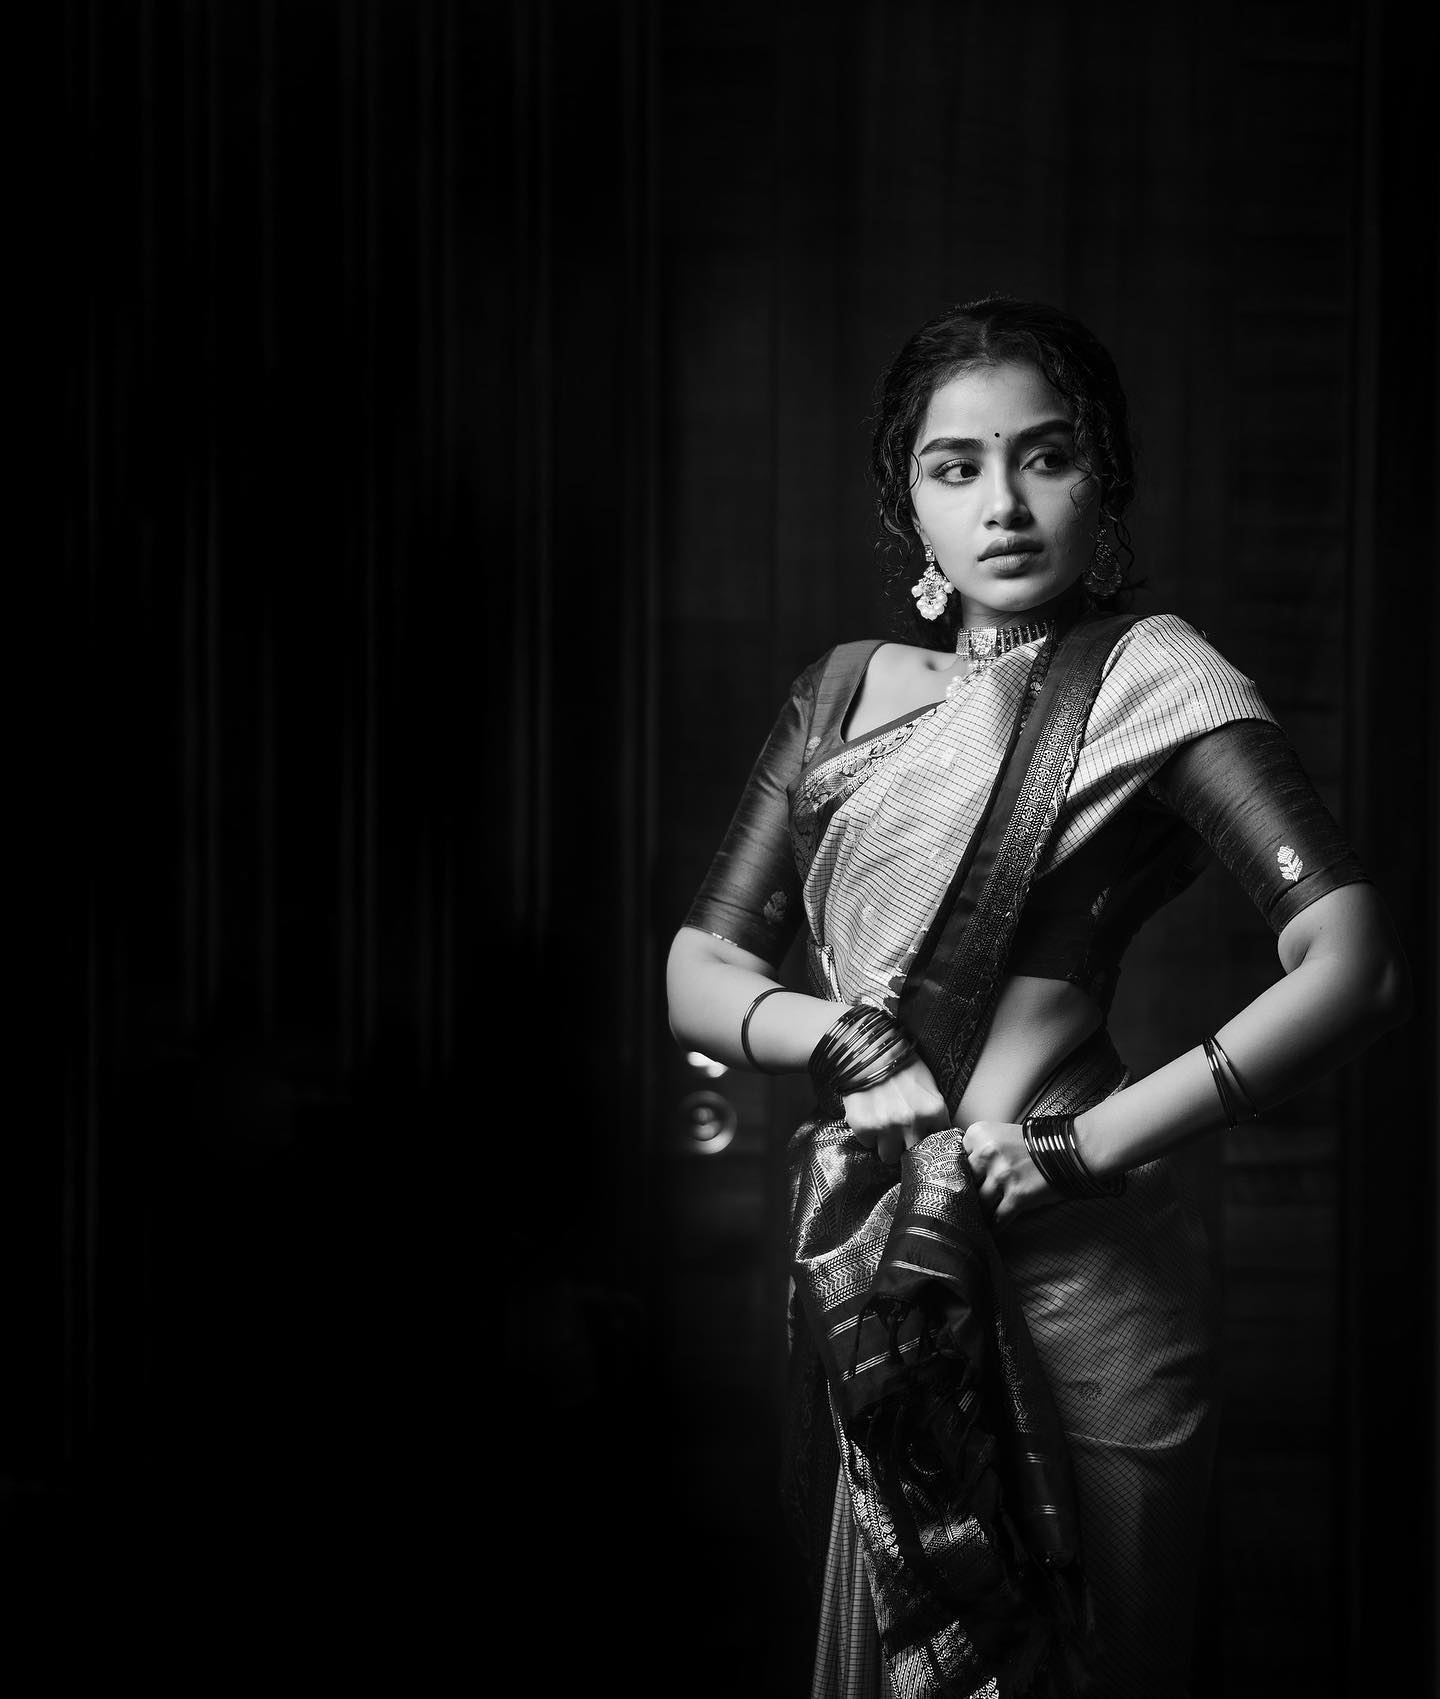  நடிகை அனுபமா பரமேஸ்வரன் ( Image : Instagram @anupamaparameswaran96)